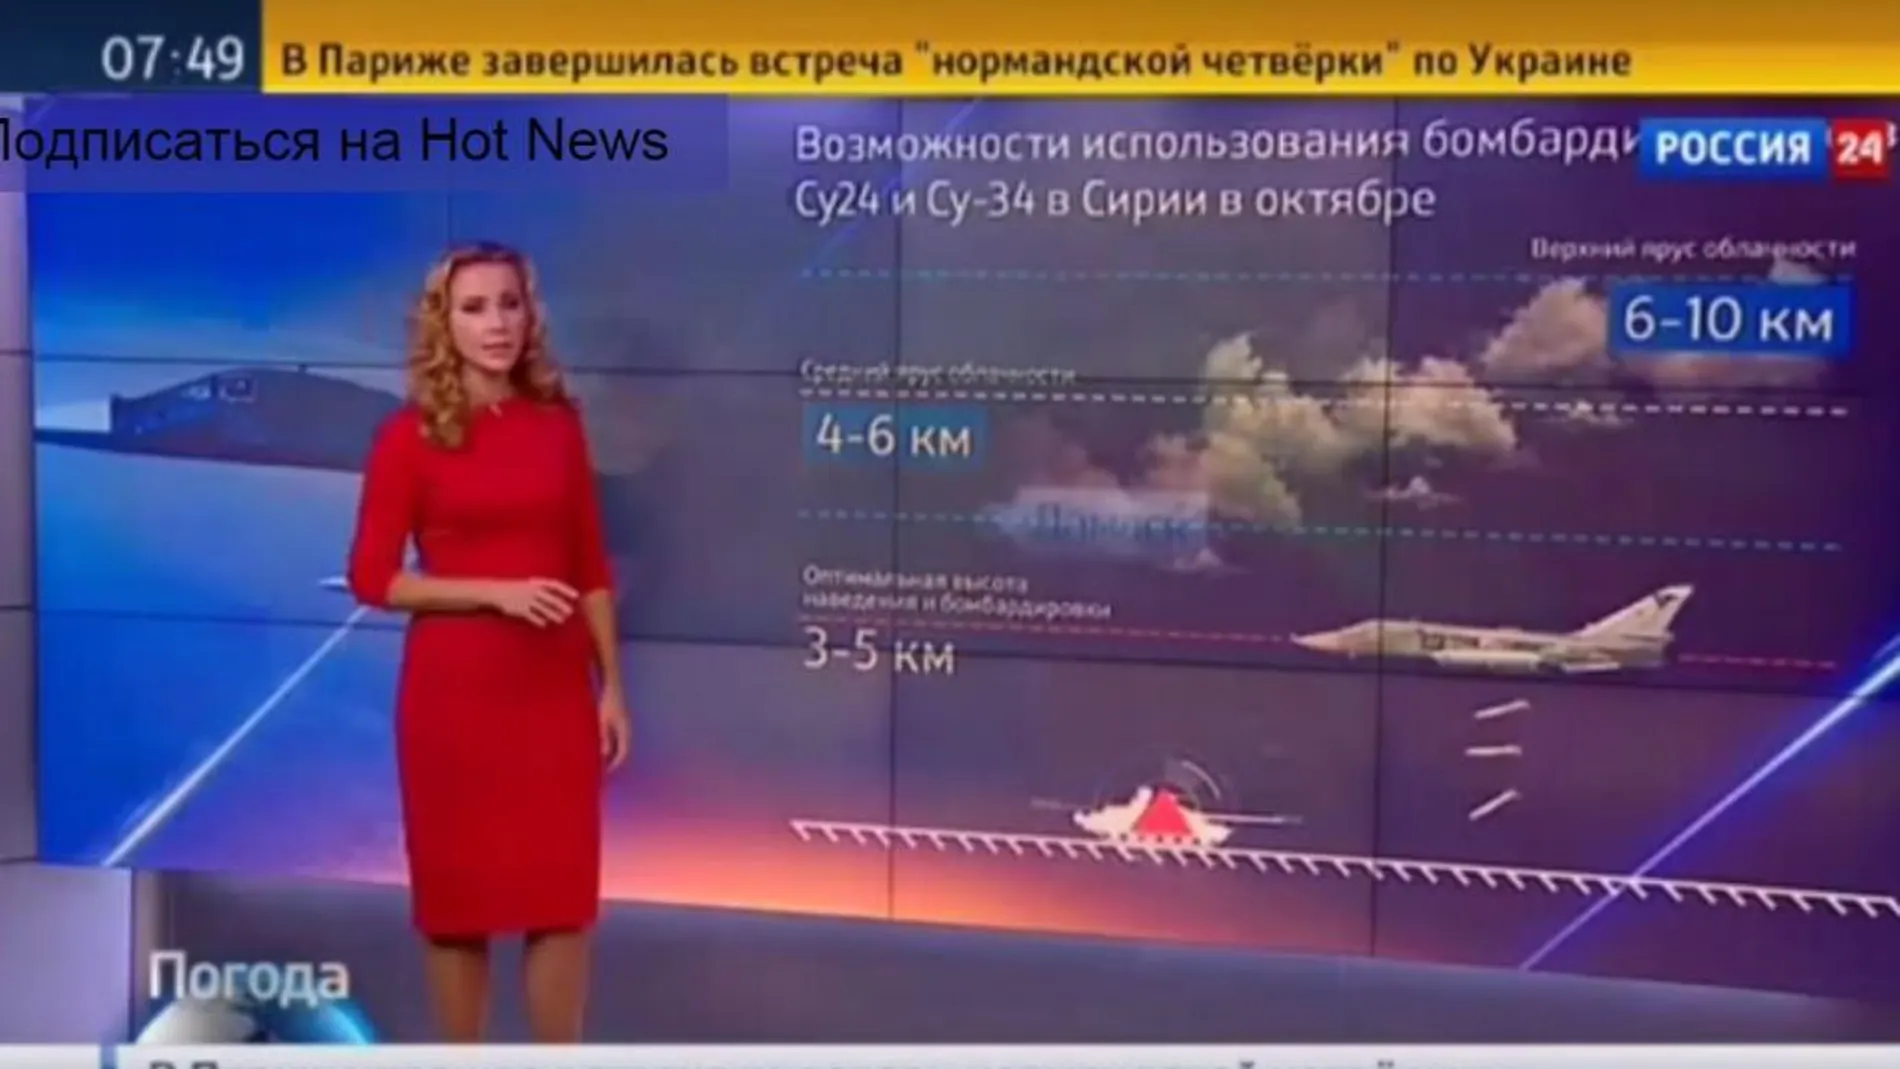 la presentadora muestra uno de los aviones que participan en la ofensiva y explica que la trayectoria de los misiles no se verá afectada